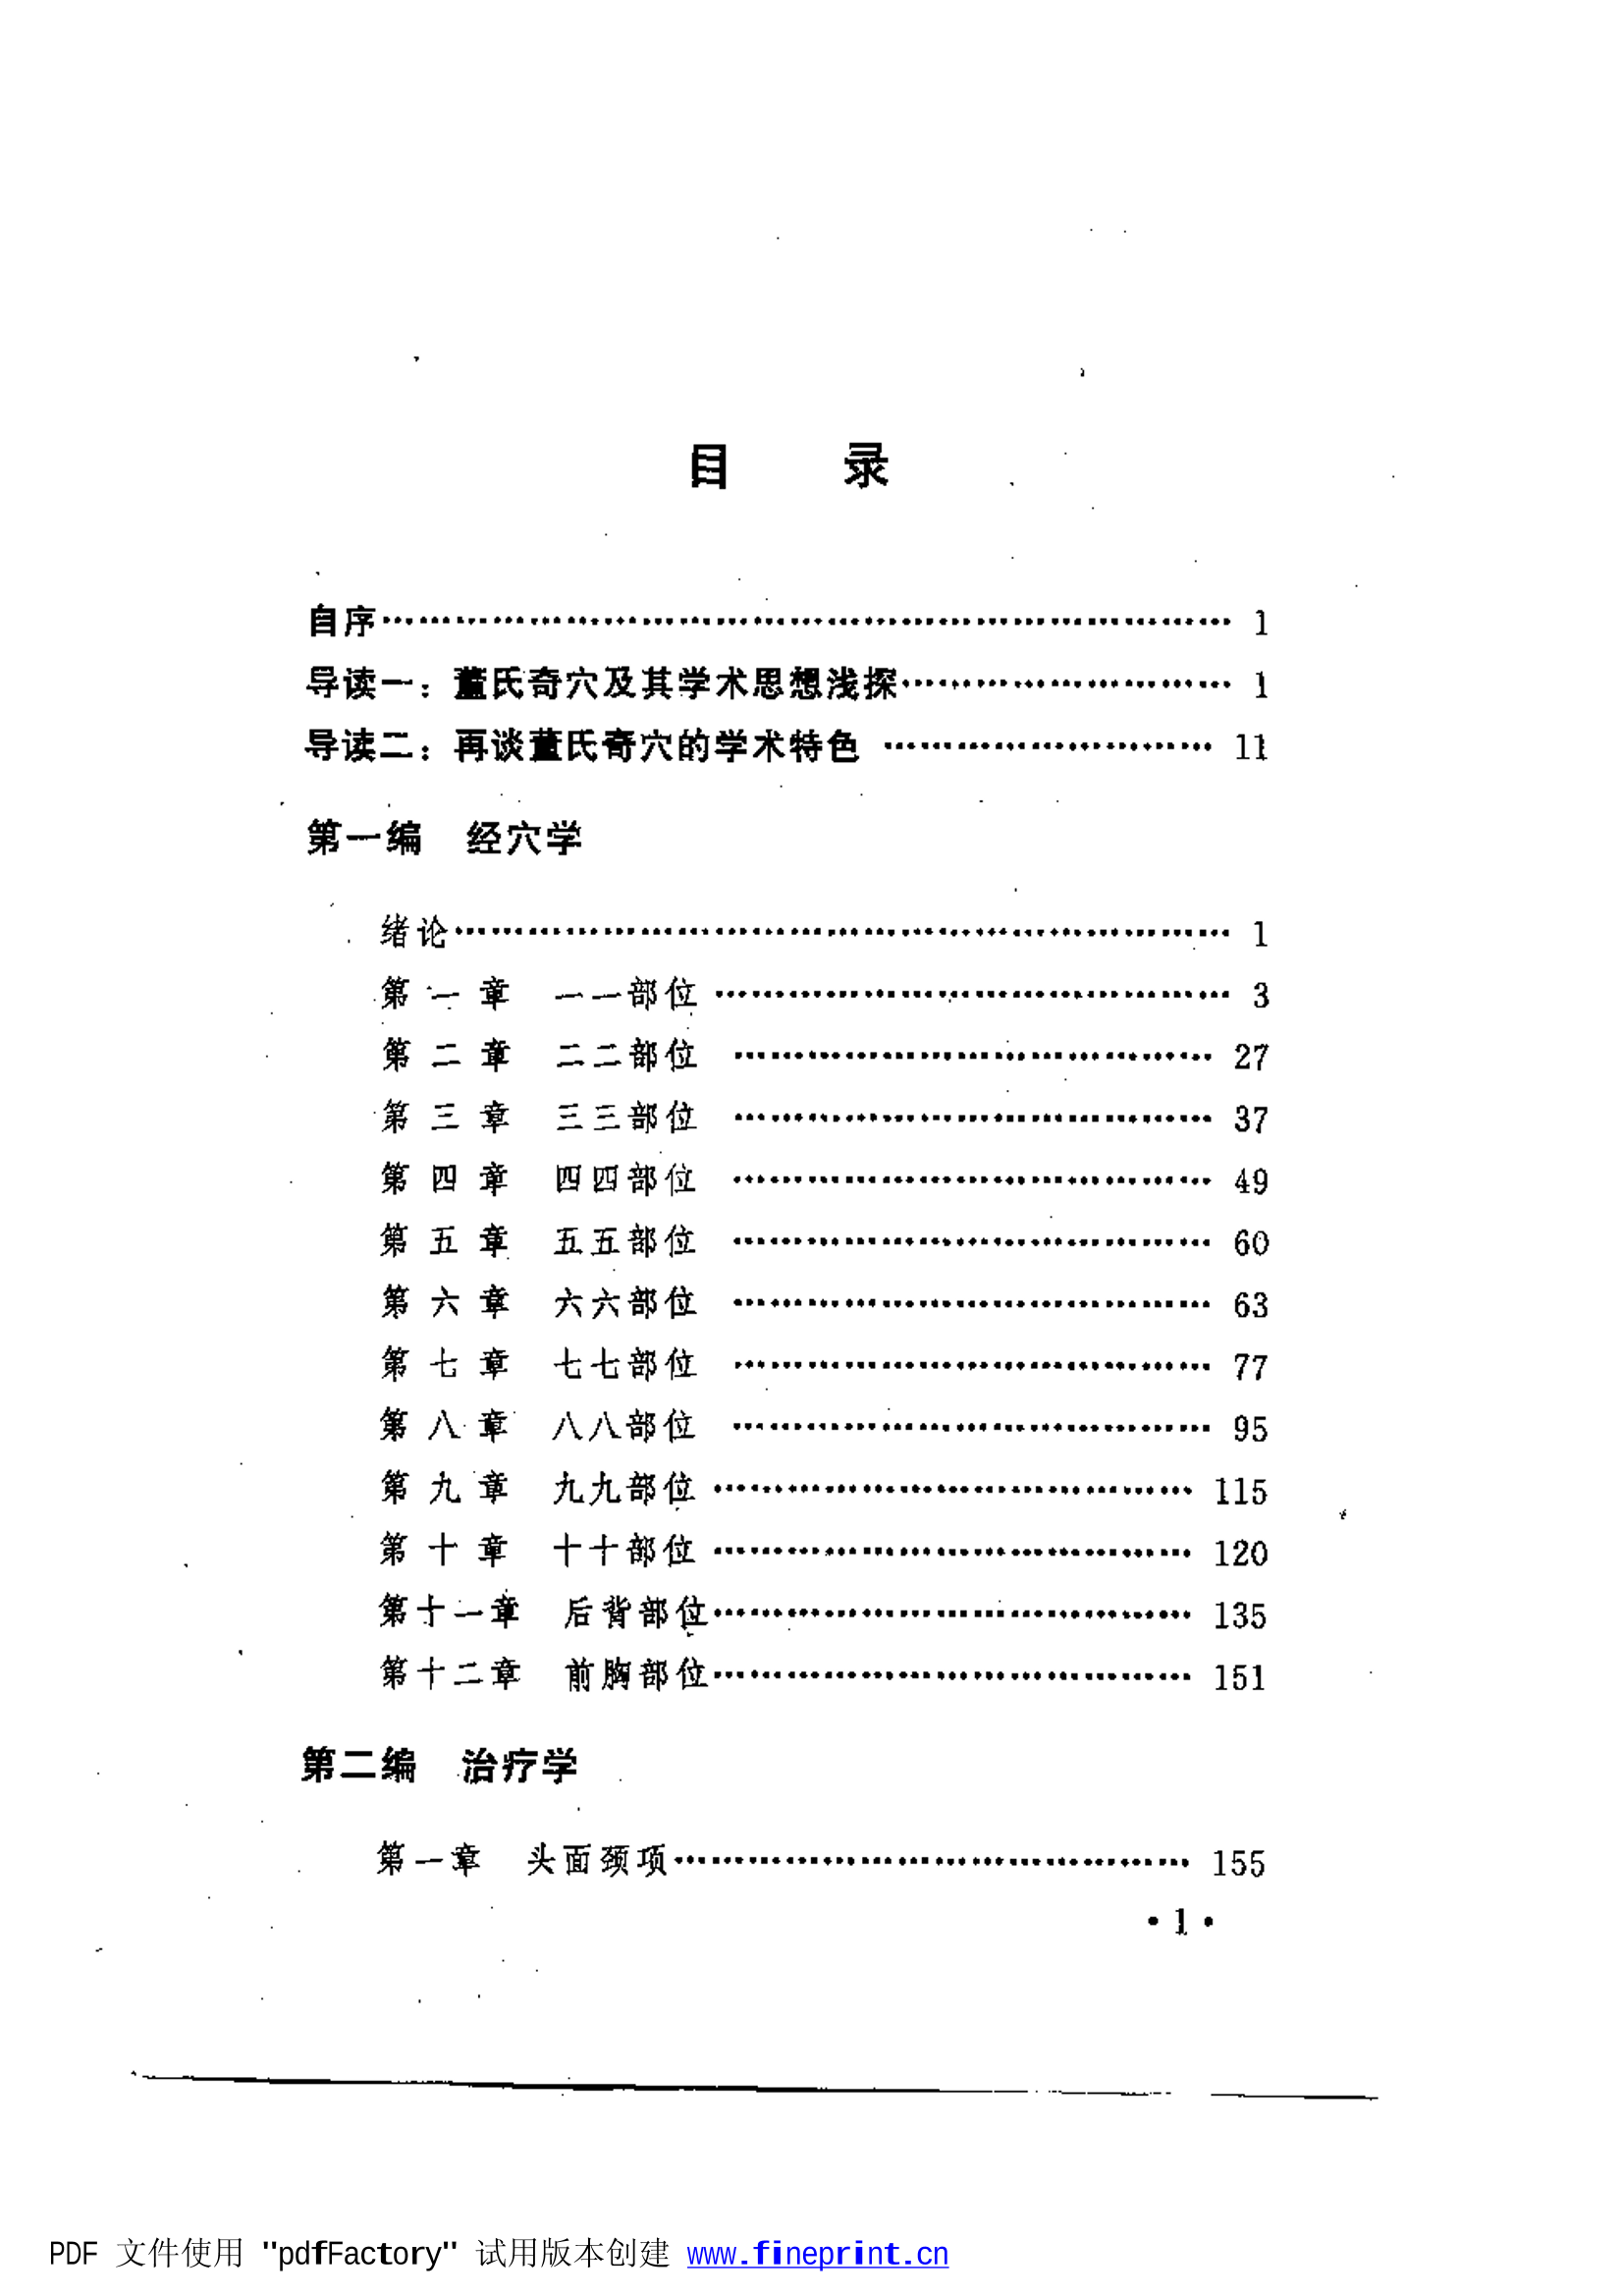 董氏奇穴针灸学.pdf